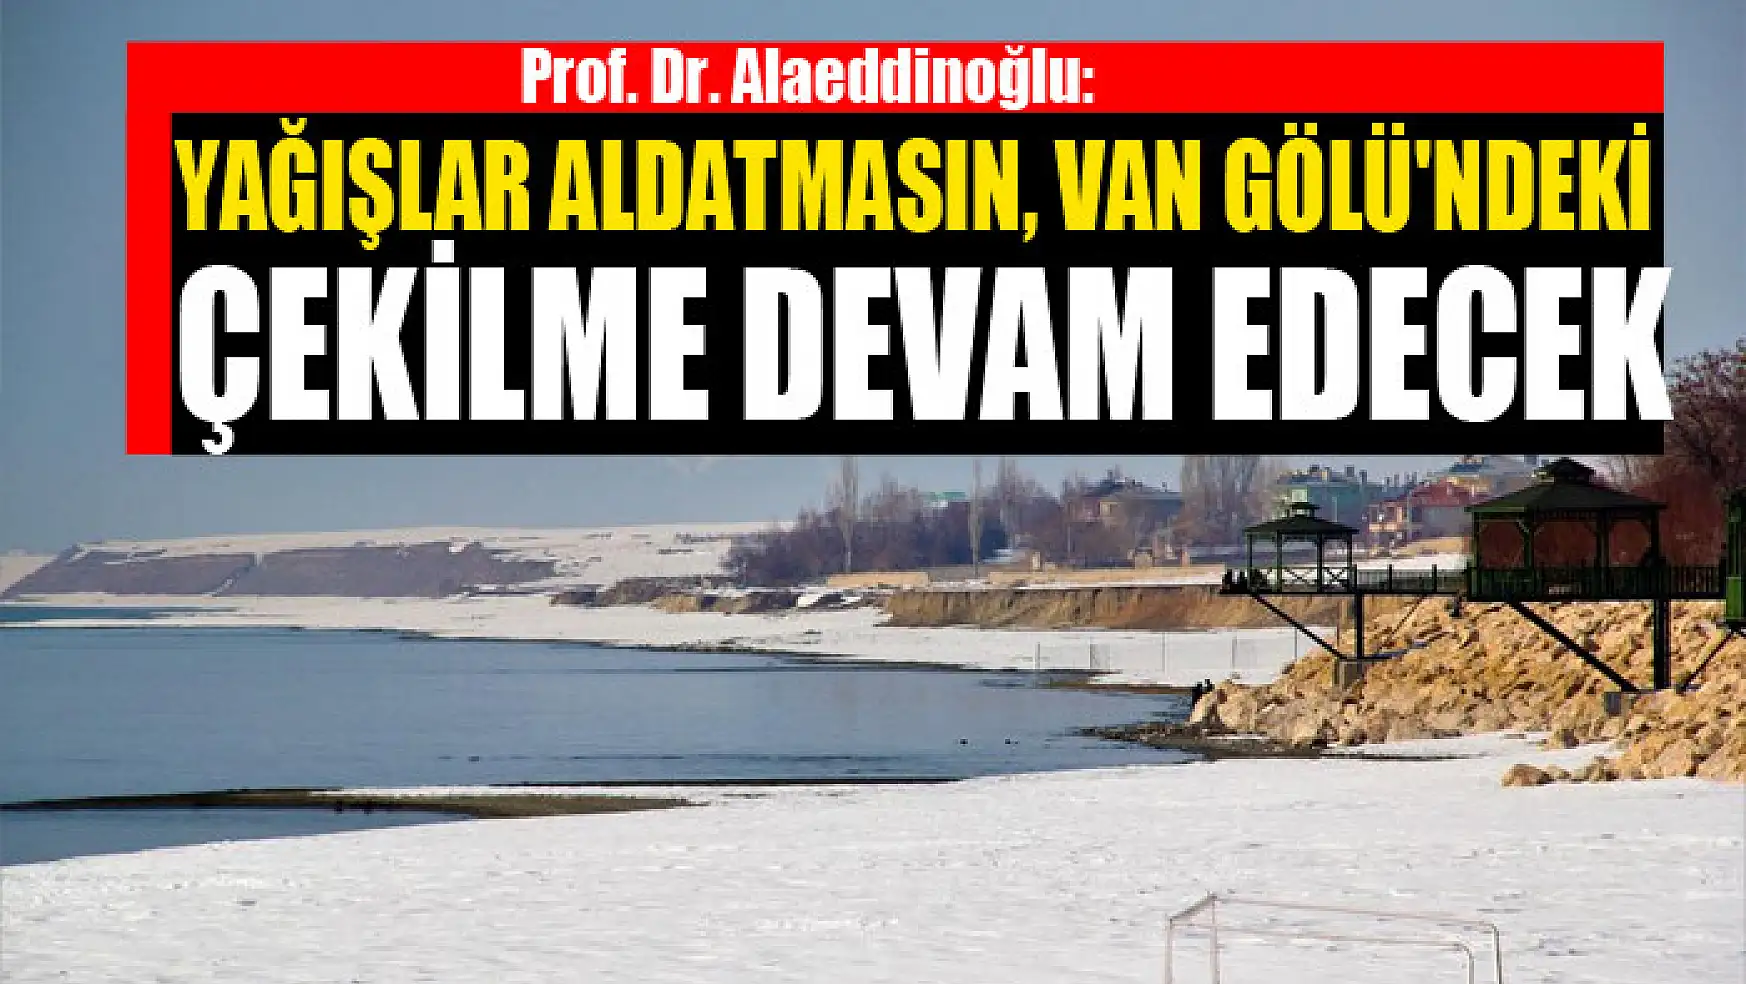 Prof. Dr. Alaeddinoğlu: Yağışlar aldatmasın, Van Gölü'ndeki çekilme devam edecek